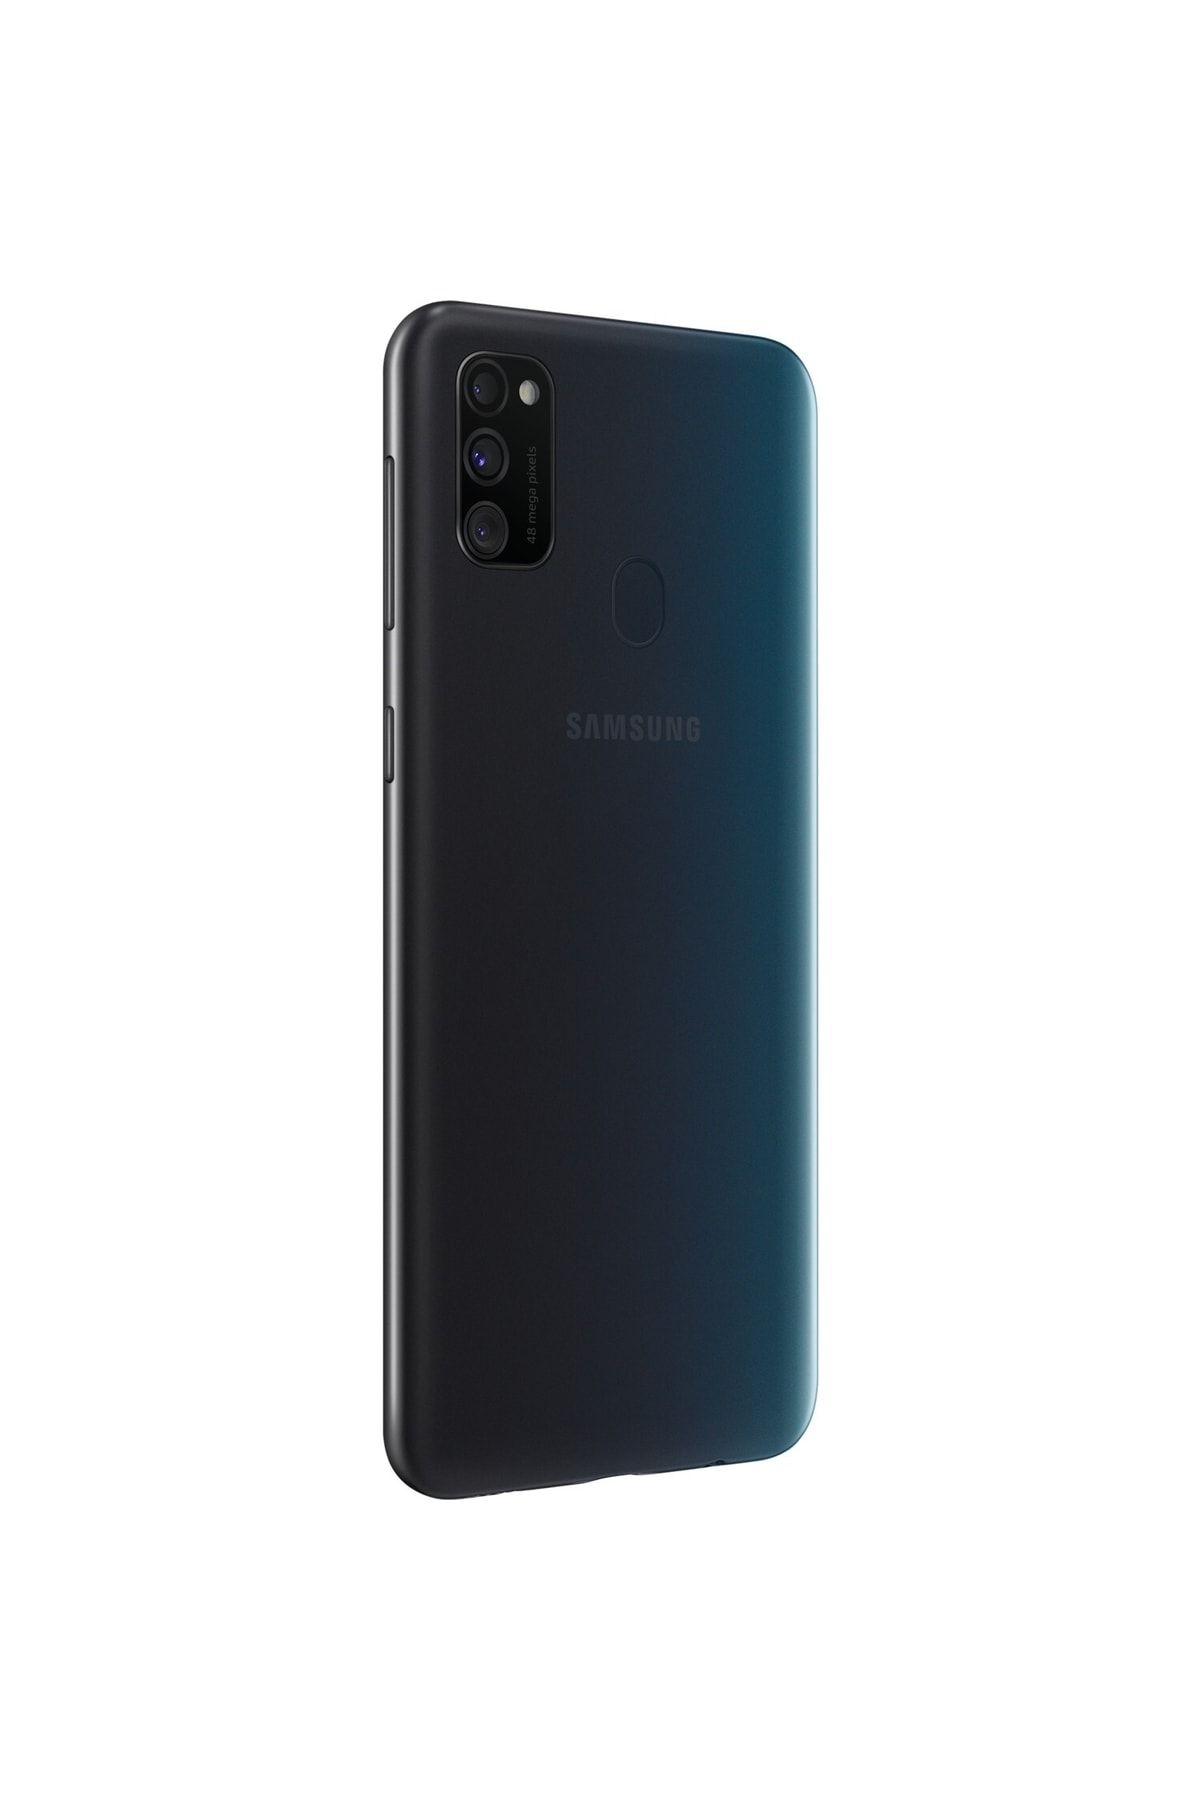 Samsung Yenilenmiş Galaxy M30s 64 Gb Black (12 AY GARANTİLİ) B Grade